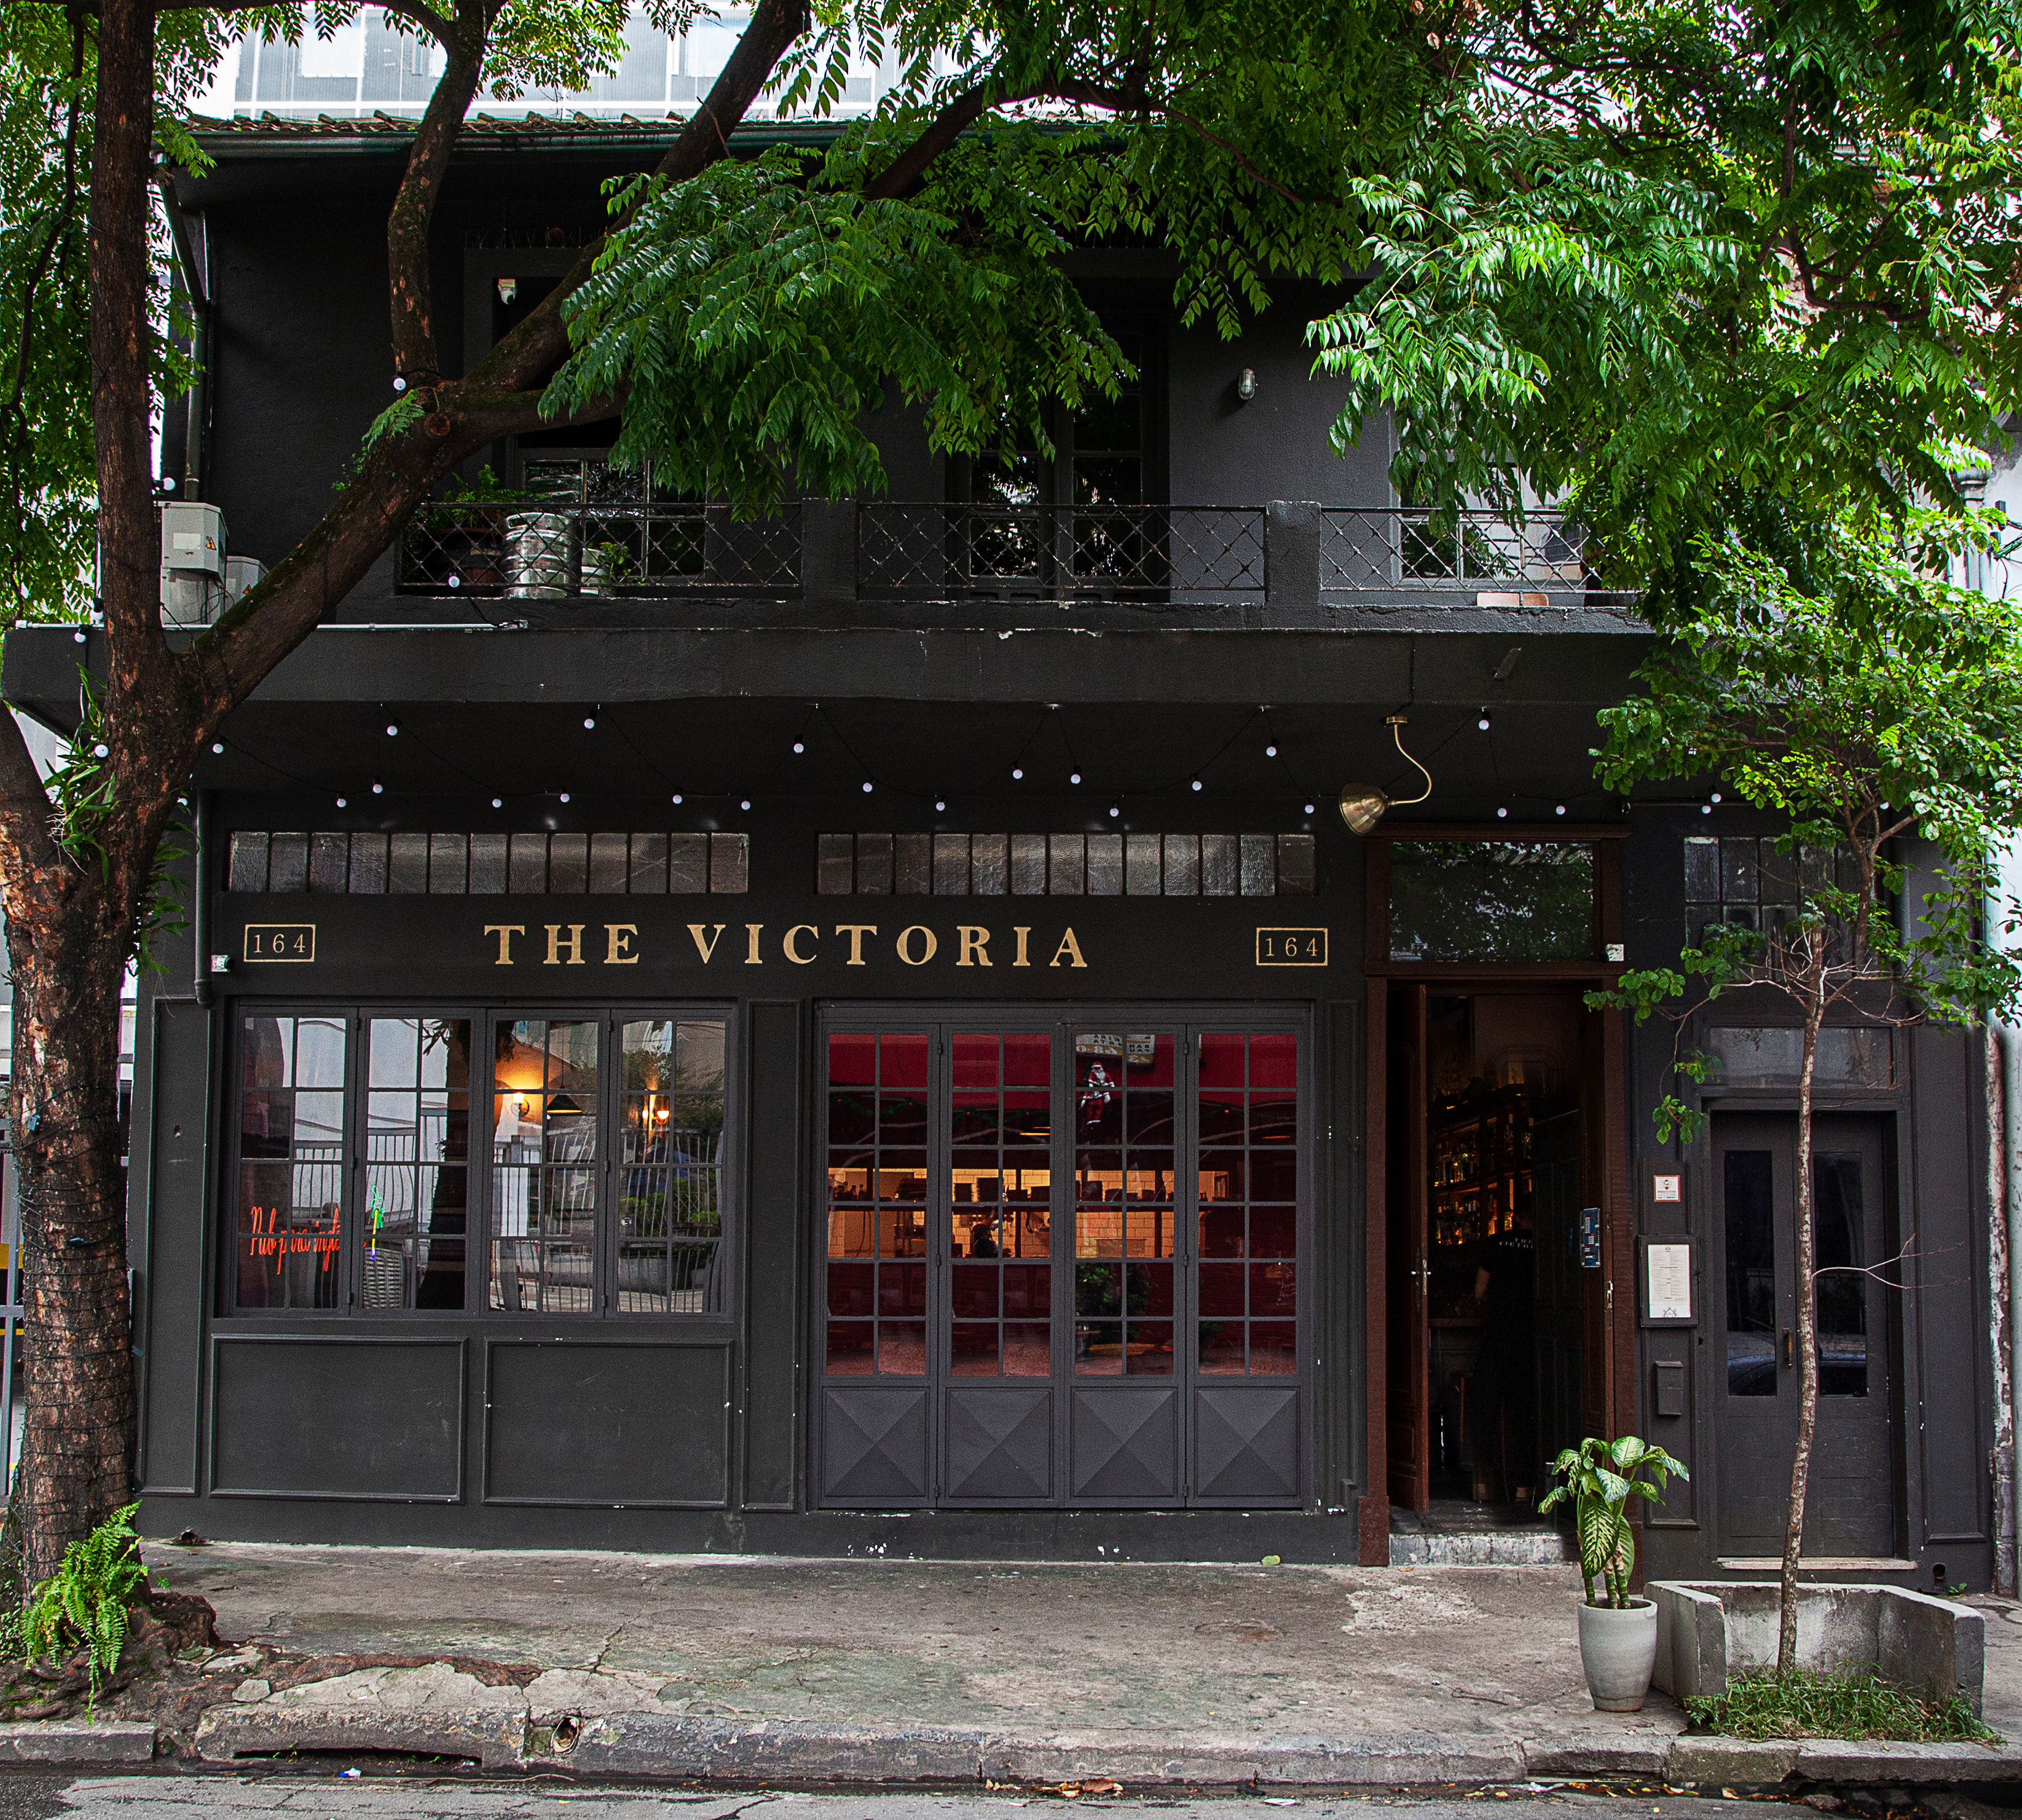 A fachada de vidro e paredes pretas do pub The Victoria.